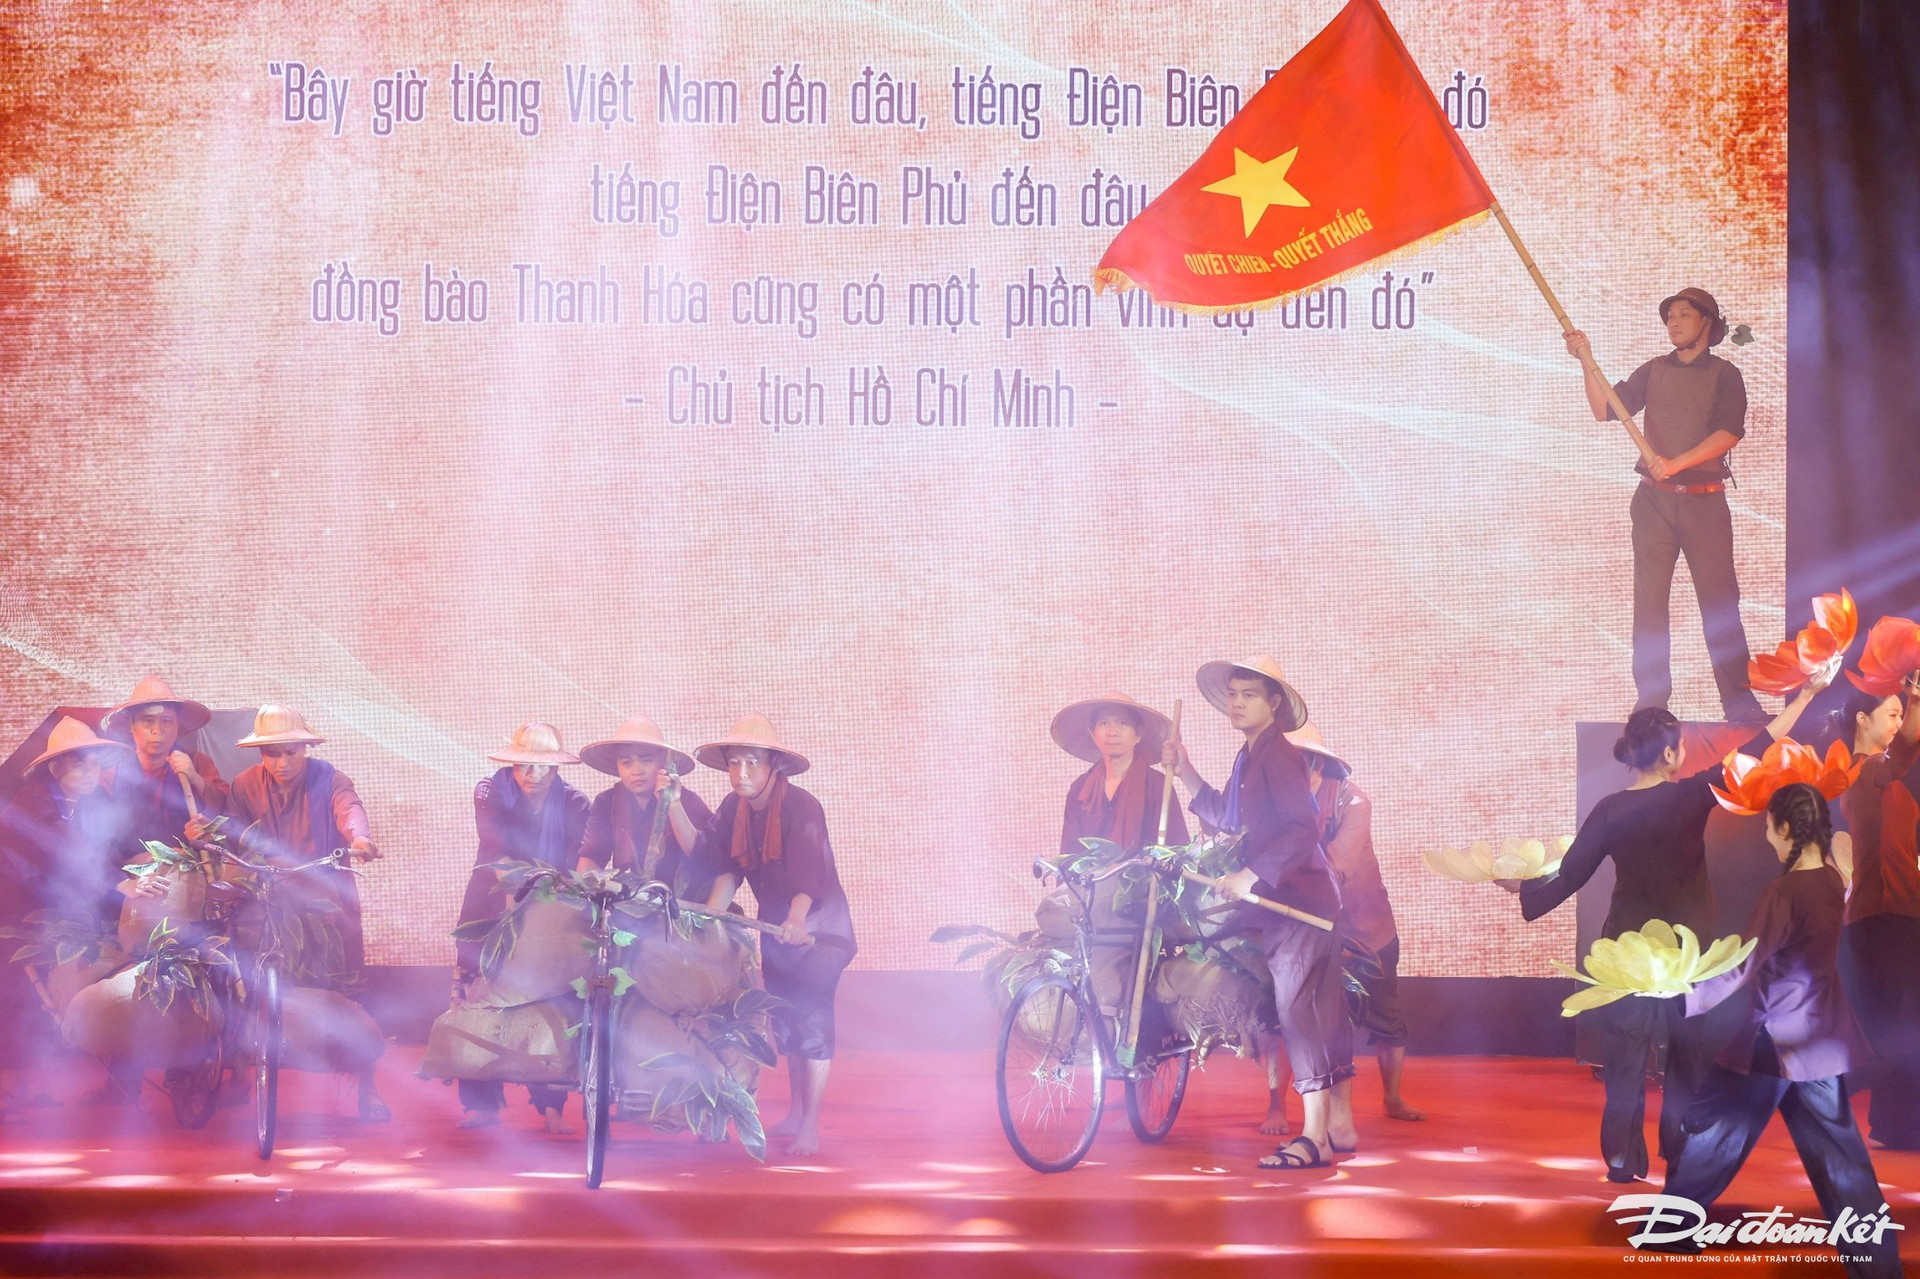 Tại buổi gặp mặt, tri ân, các đại biểu được thưởng thức màn nghệ thuật sân khấu hóa tái hiện chiến thắng Điện Biên Phủ. Ảnh: Quang Vinh.